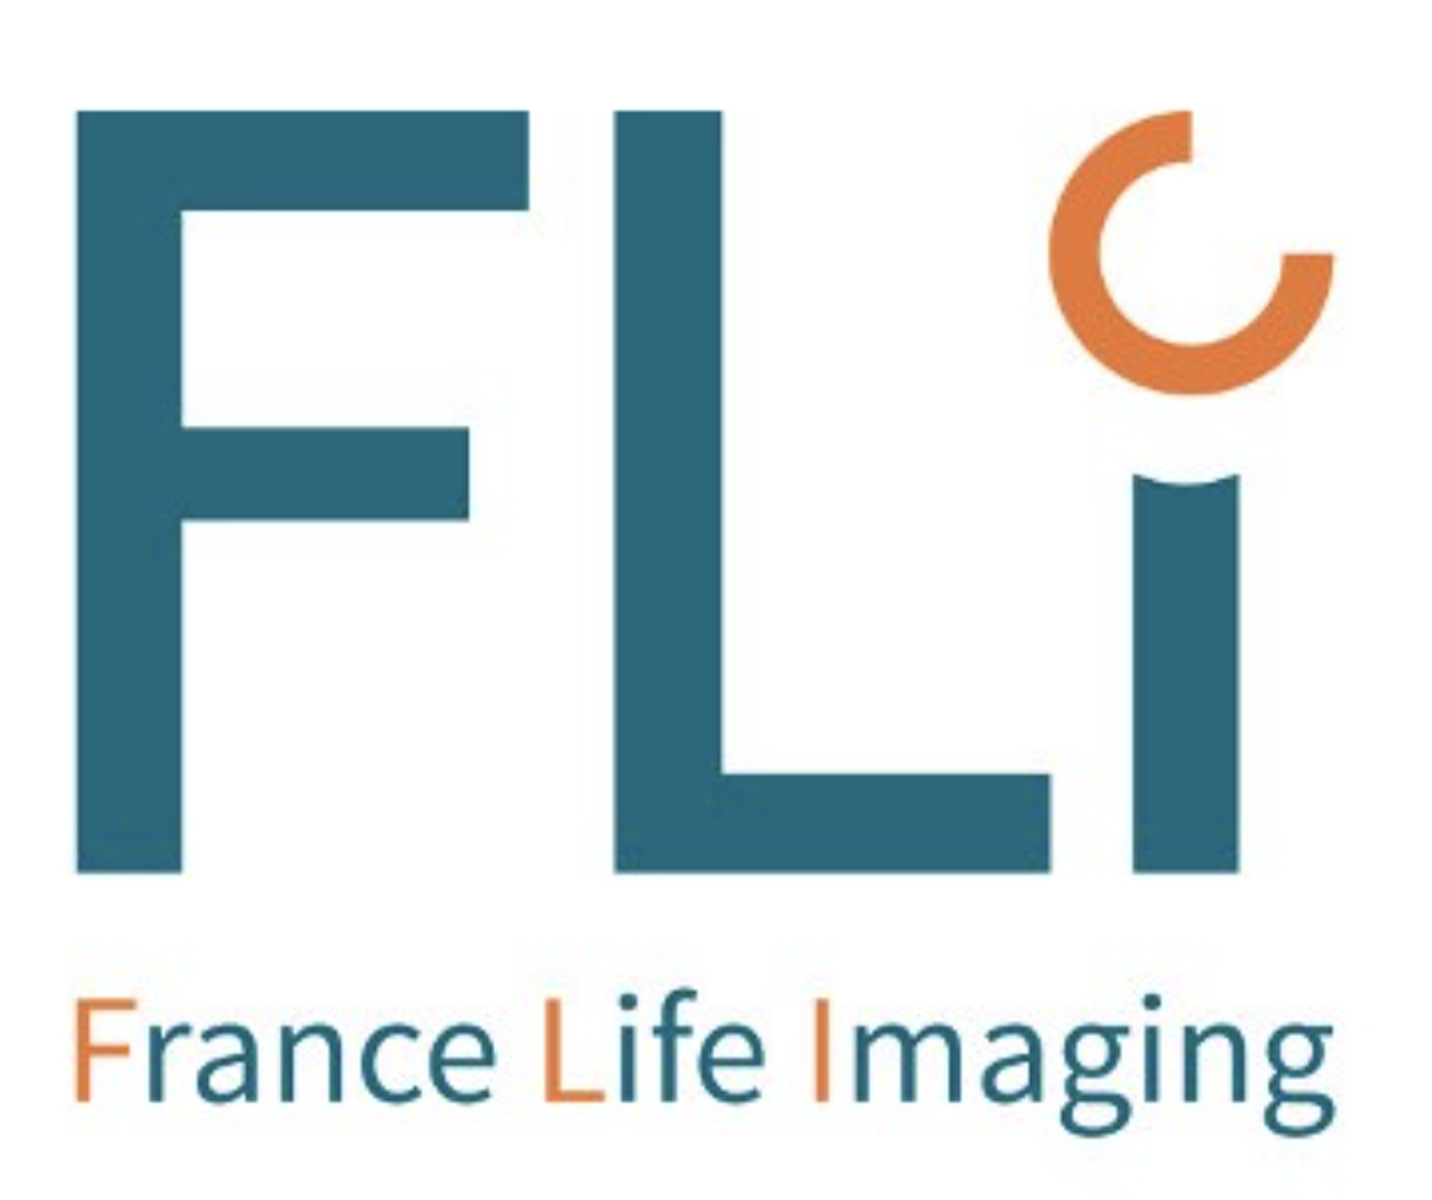 France Live Imaging